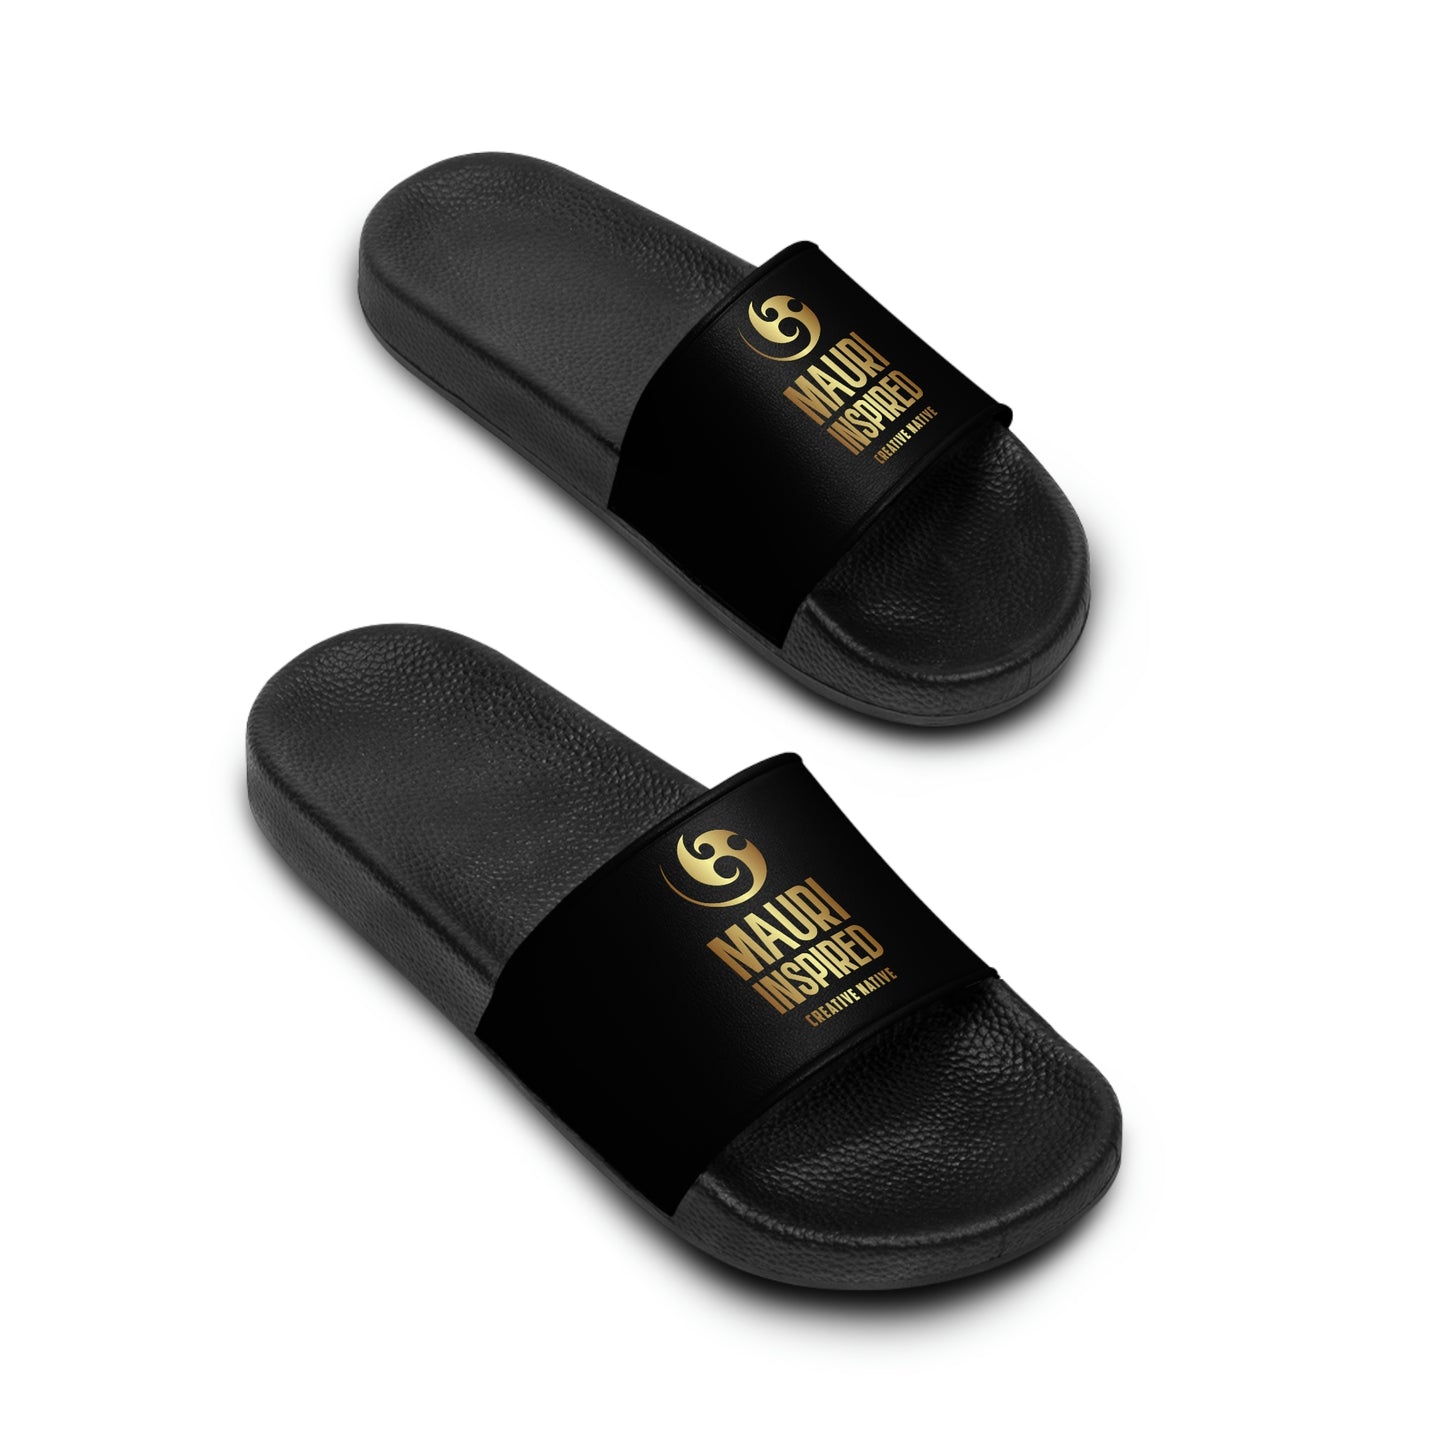 Mauri Inspired - Women's Slide Sandals